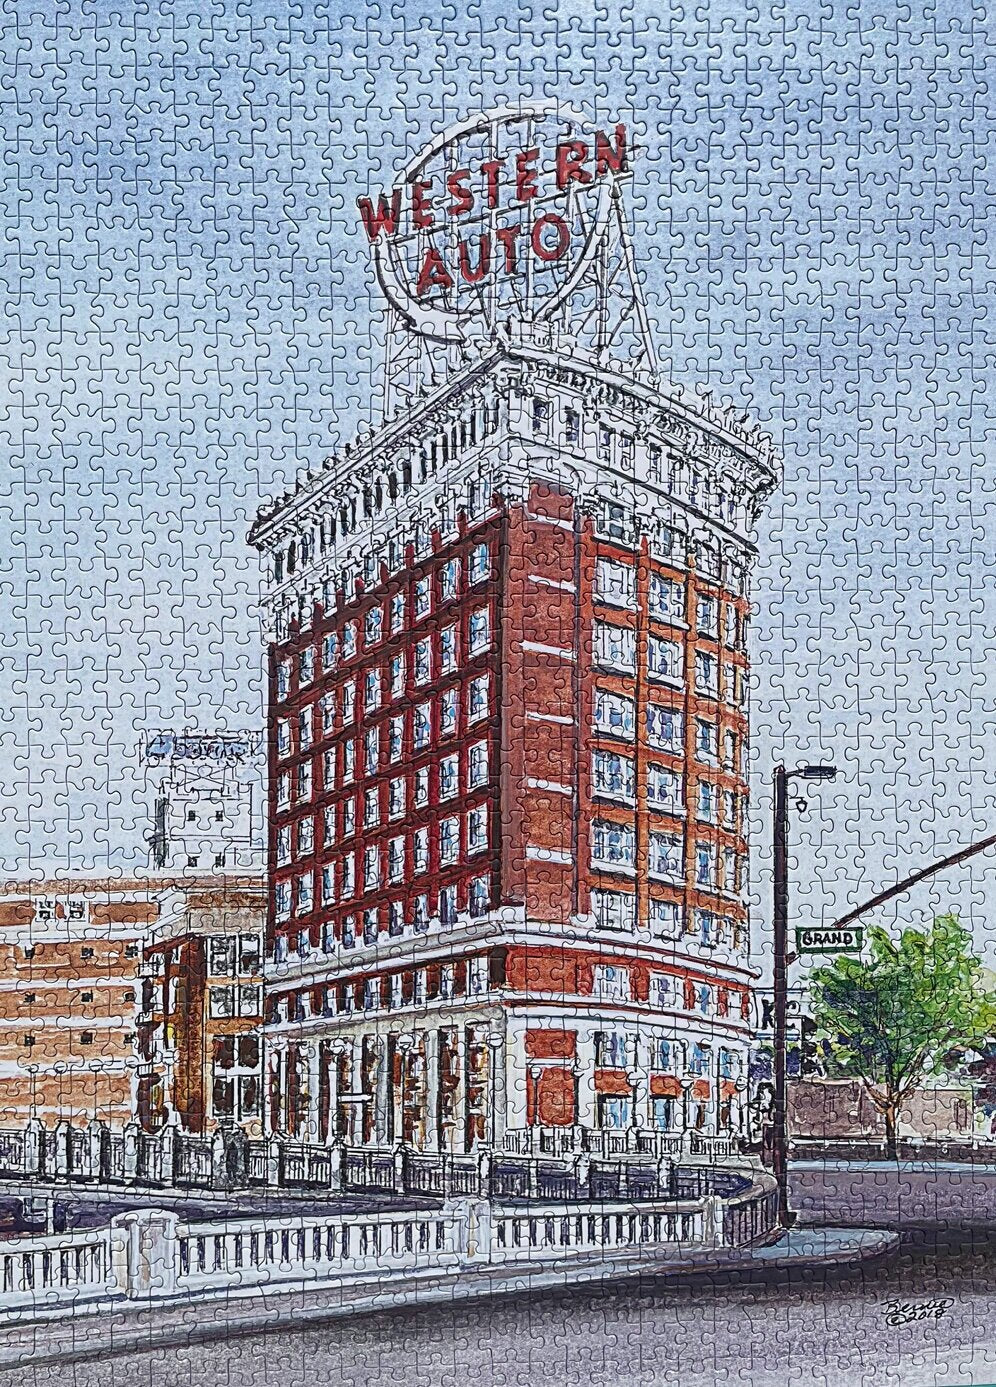 Western Auto Puzzle | 1,000 Pieces